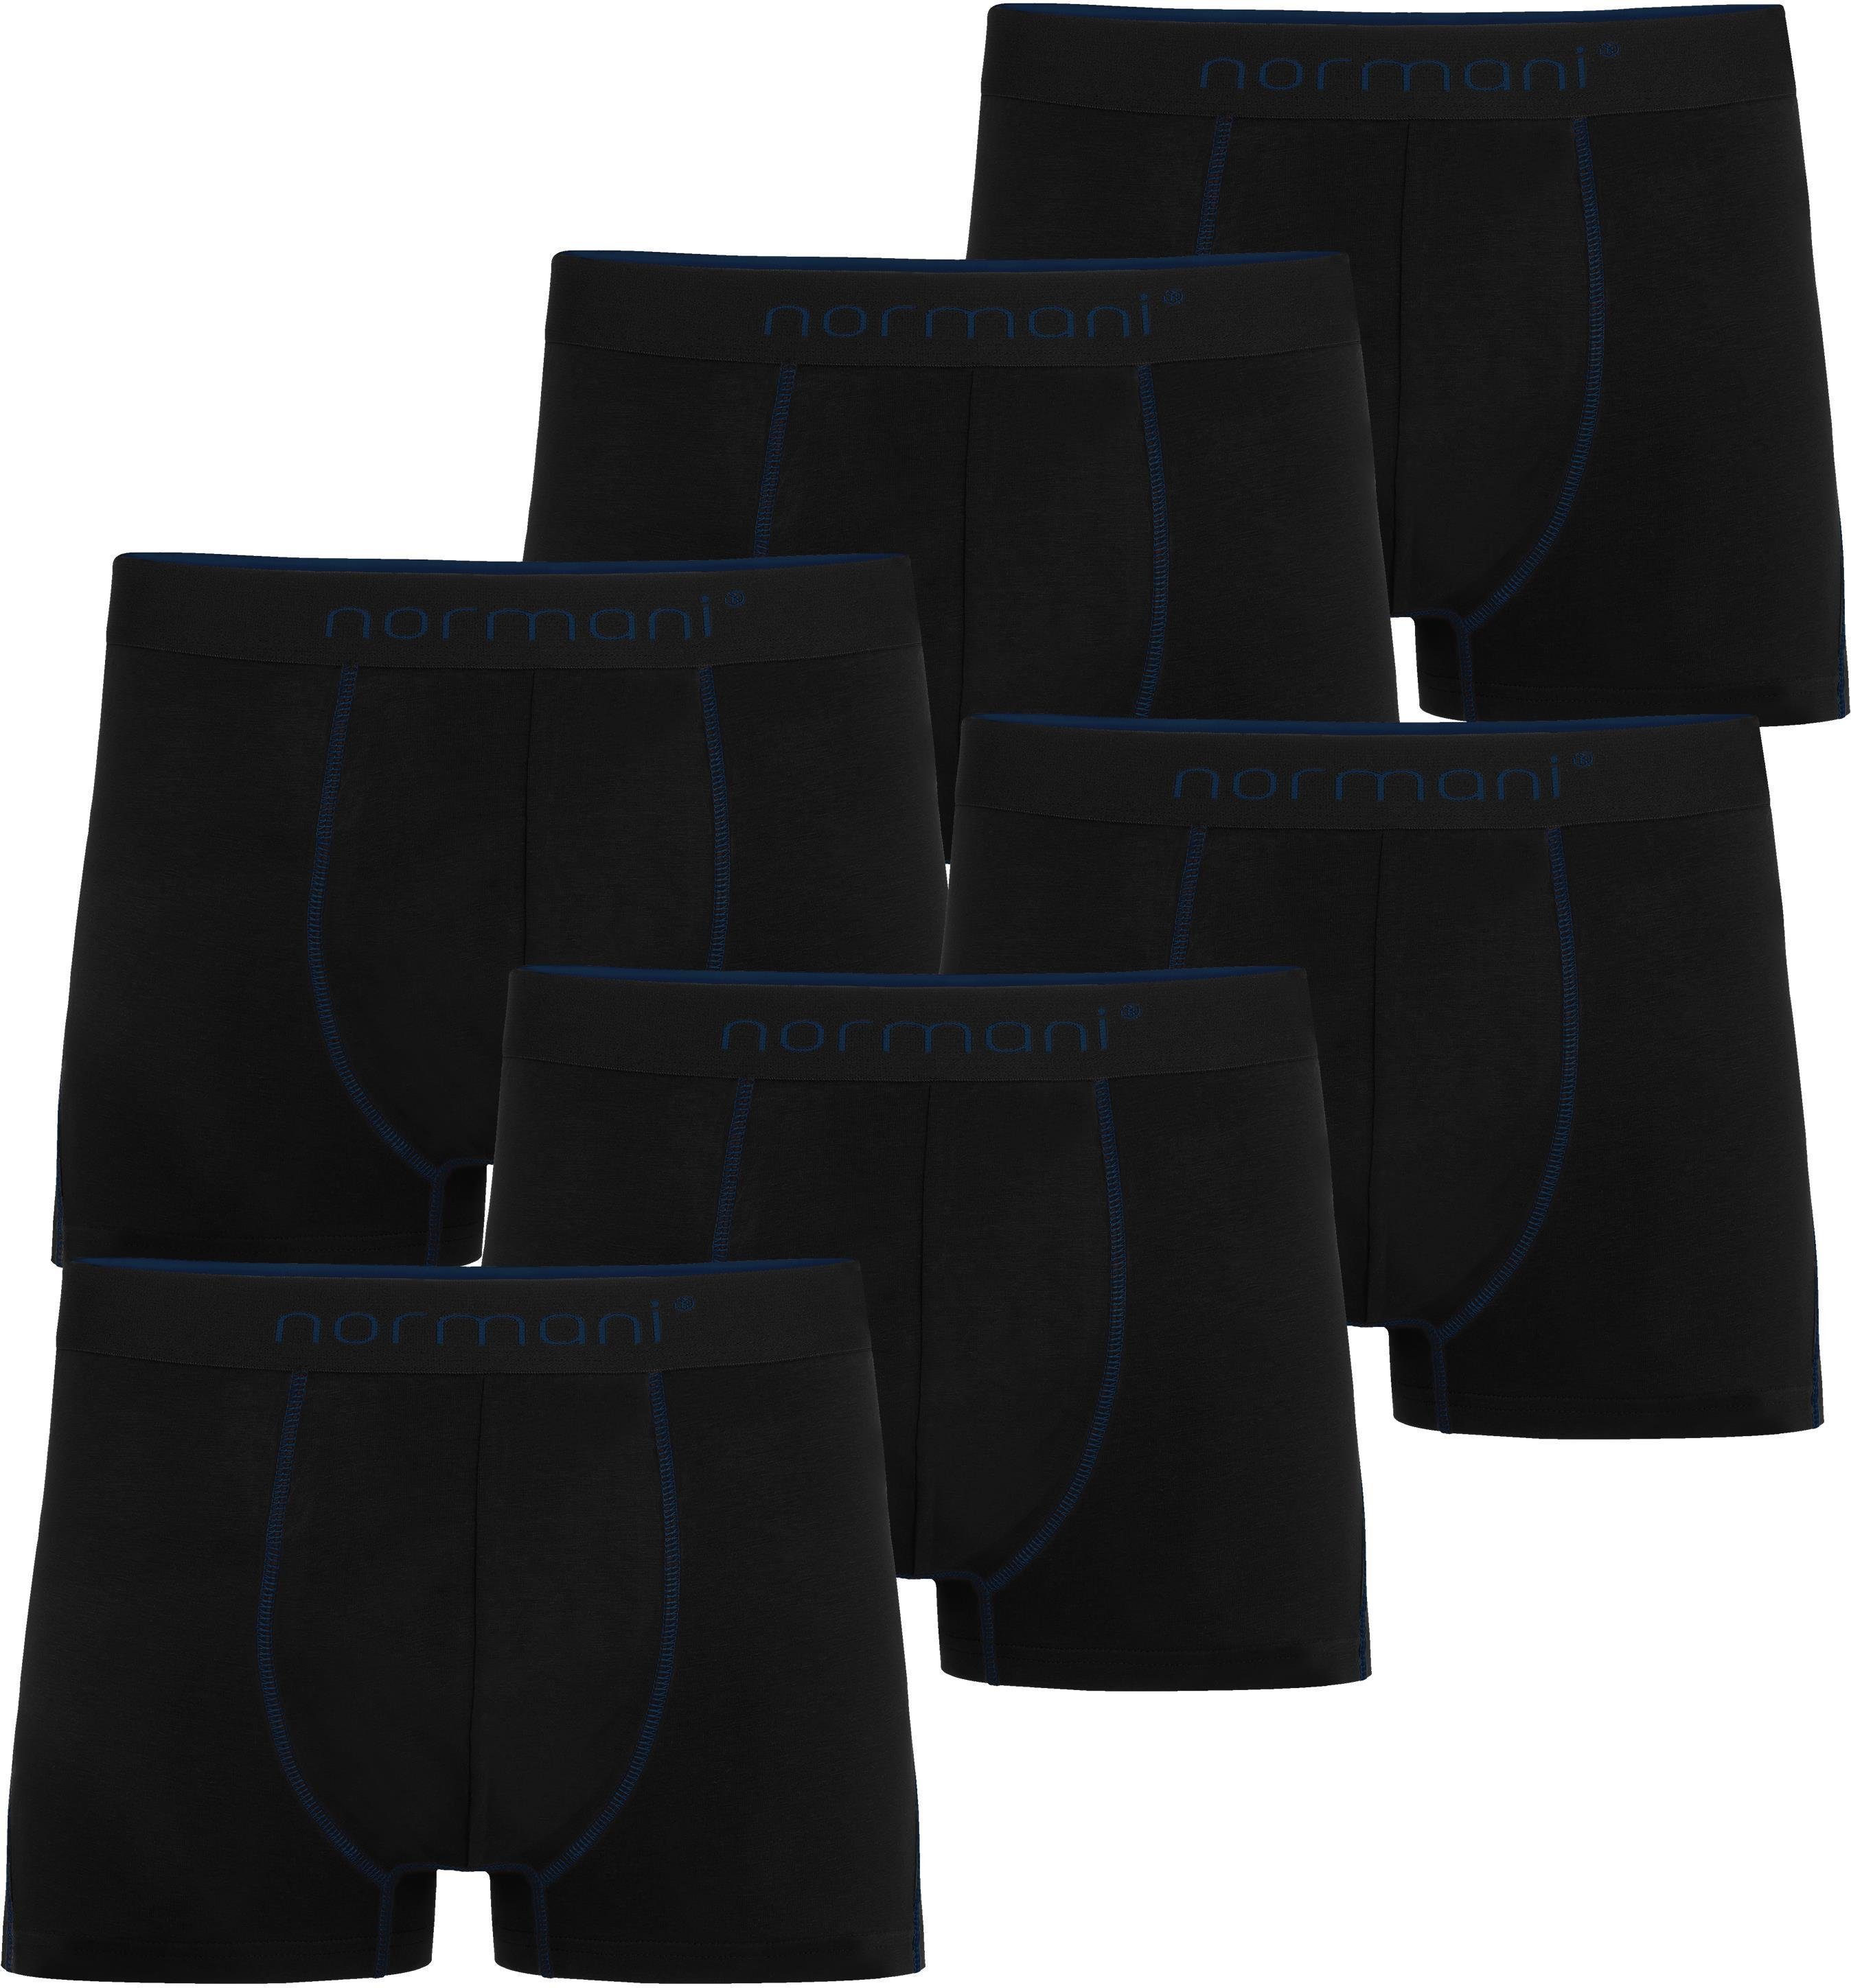 normani Boxershorts 6 Herren Baumwoll-Boxershorts Unterhose aus atmungsaktiver Baumwolle für Männer Dunkelblau | Boxershorts